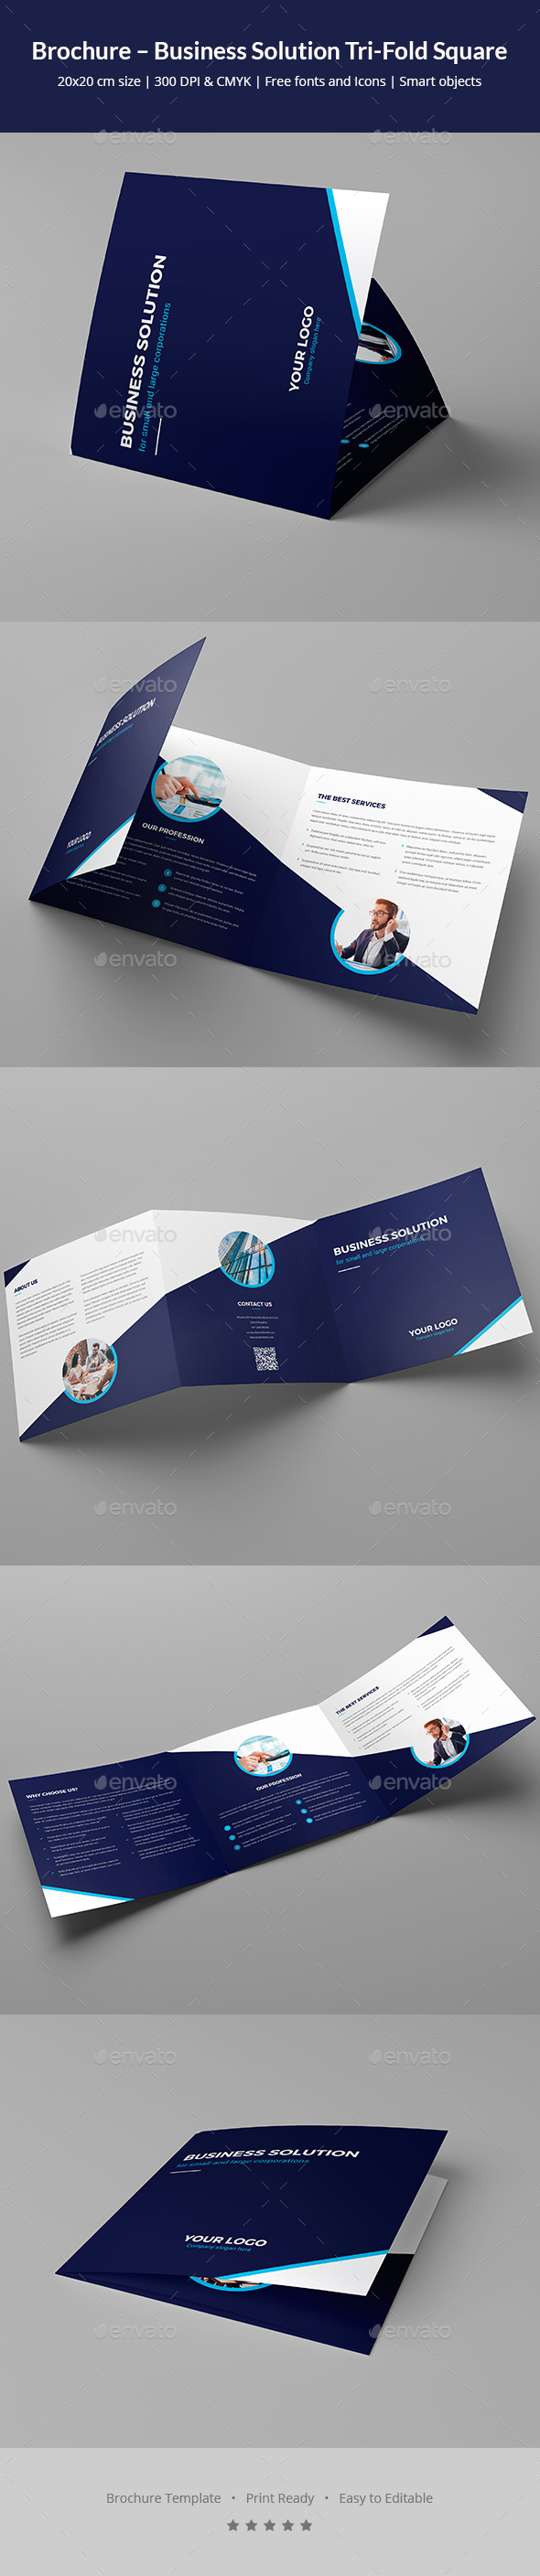 GraphicRiver Brochure Business Solution Tri-Fold Square 20847452